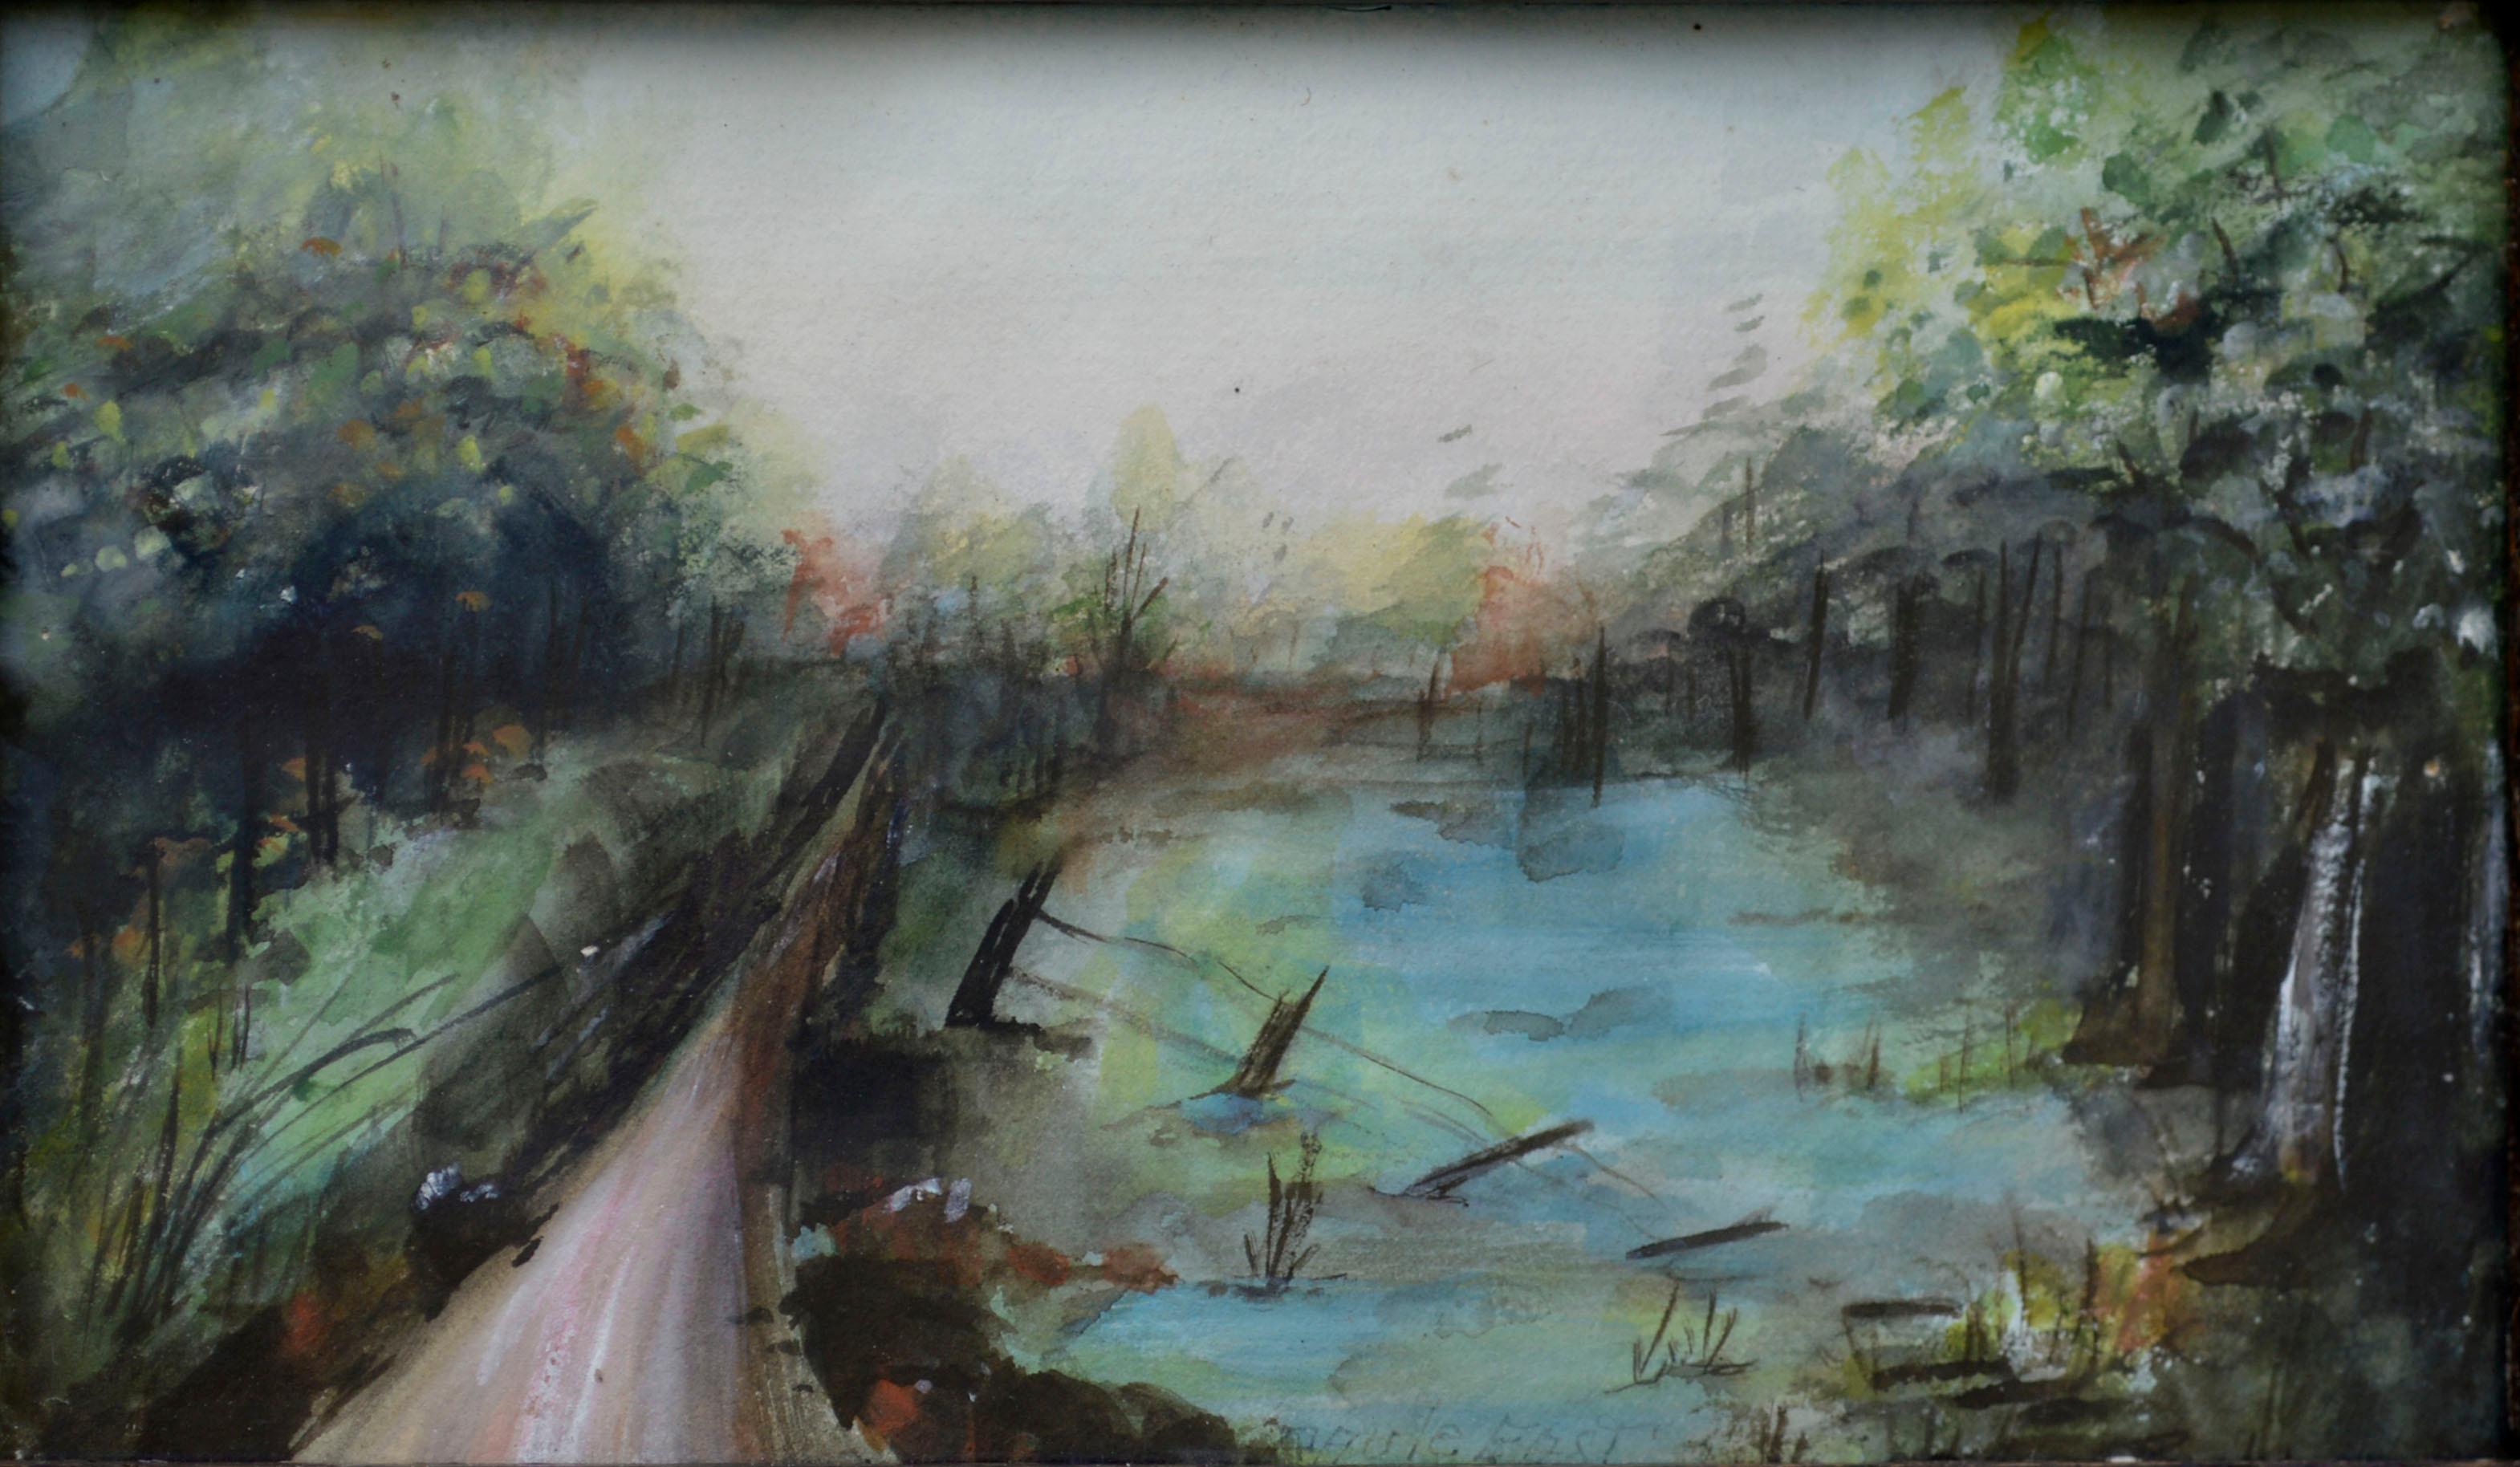 Blauer Teich des frühen 20. Jahrhunderts by the Path Landschaft – Art von Paule East